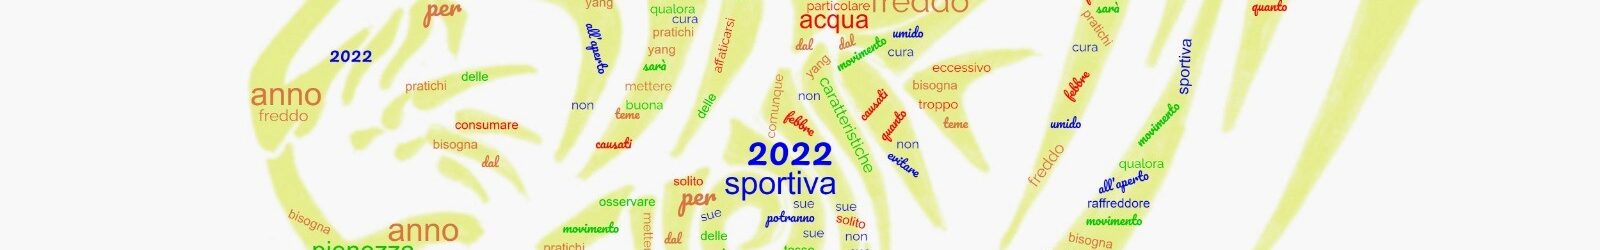 Festa di Primavera 2022